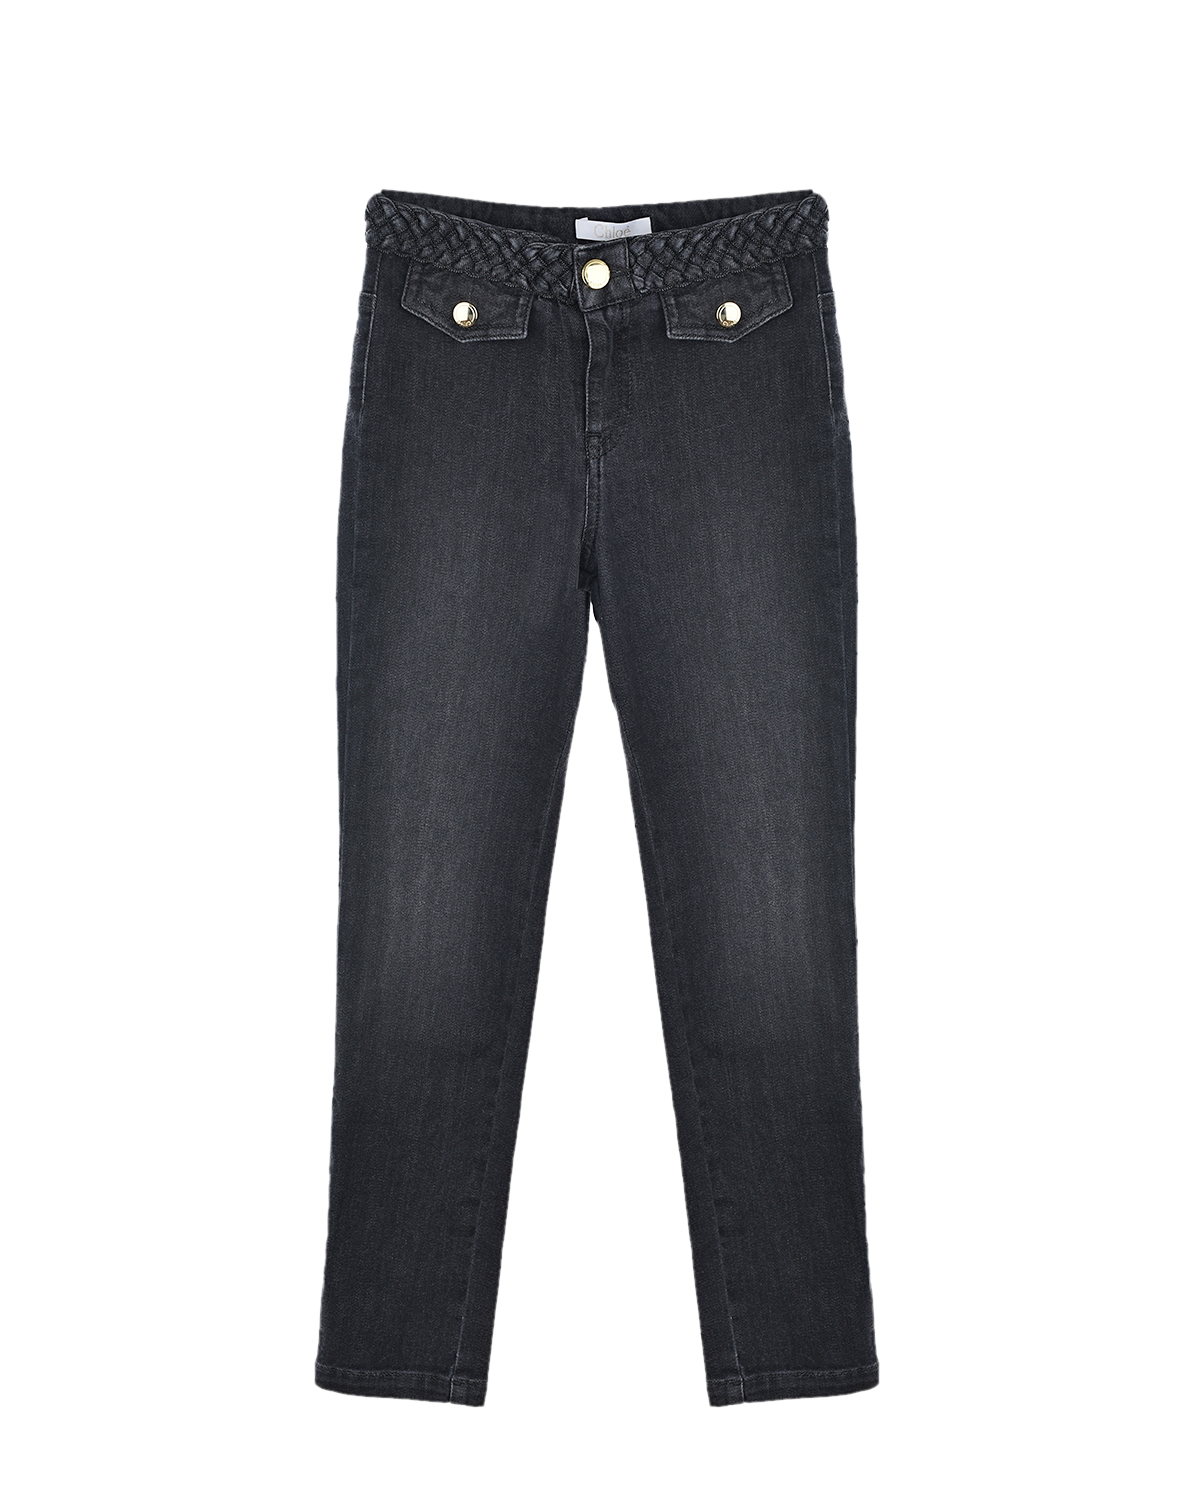 Черные джинсы с плетеным поясом Chloe детские, размер 128, цвет черный - фото 1